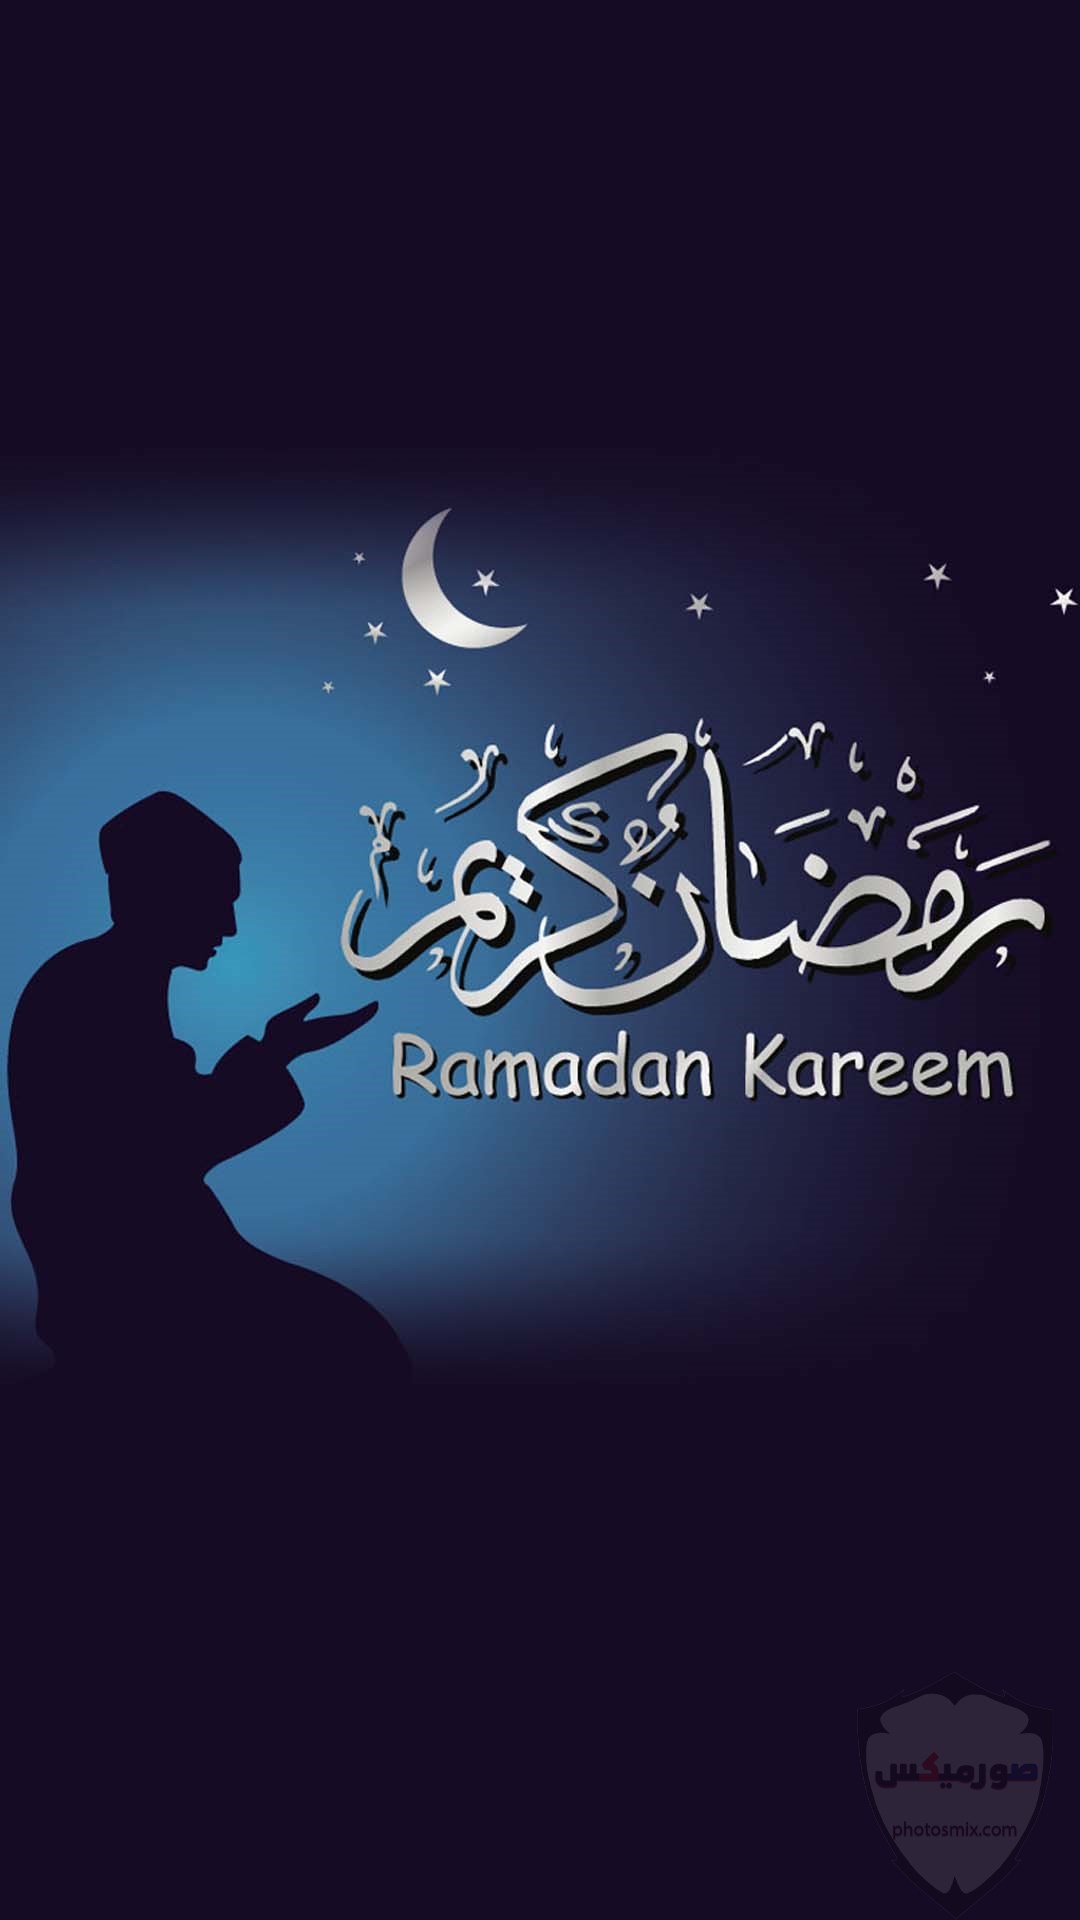 صور رمضان 2020 اجمل صور فوانيس وادعية رمضان 18